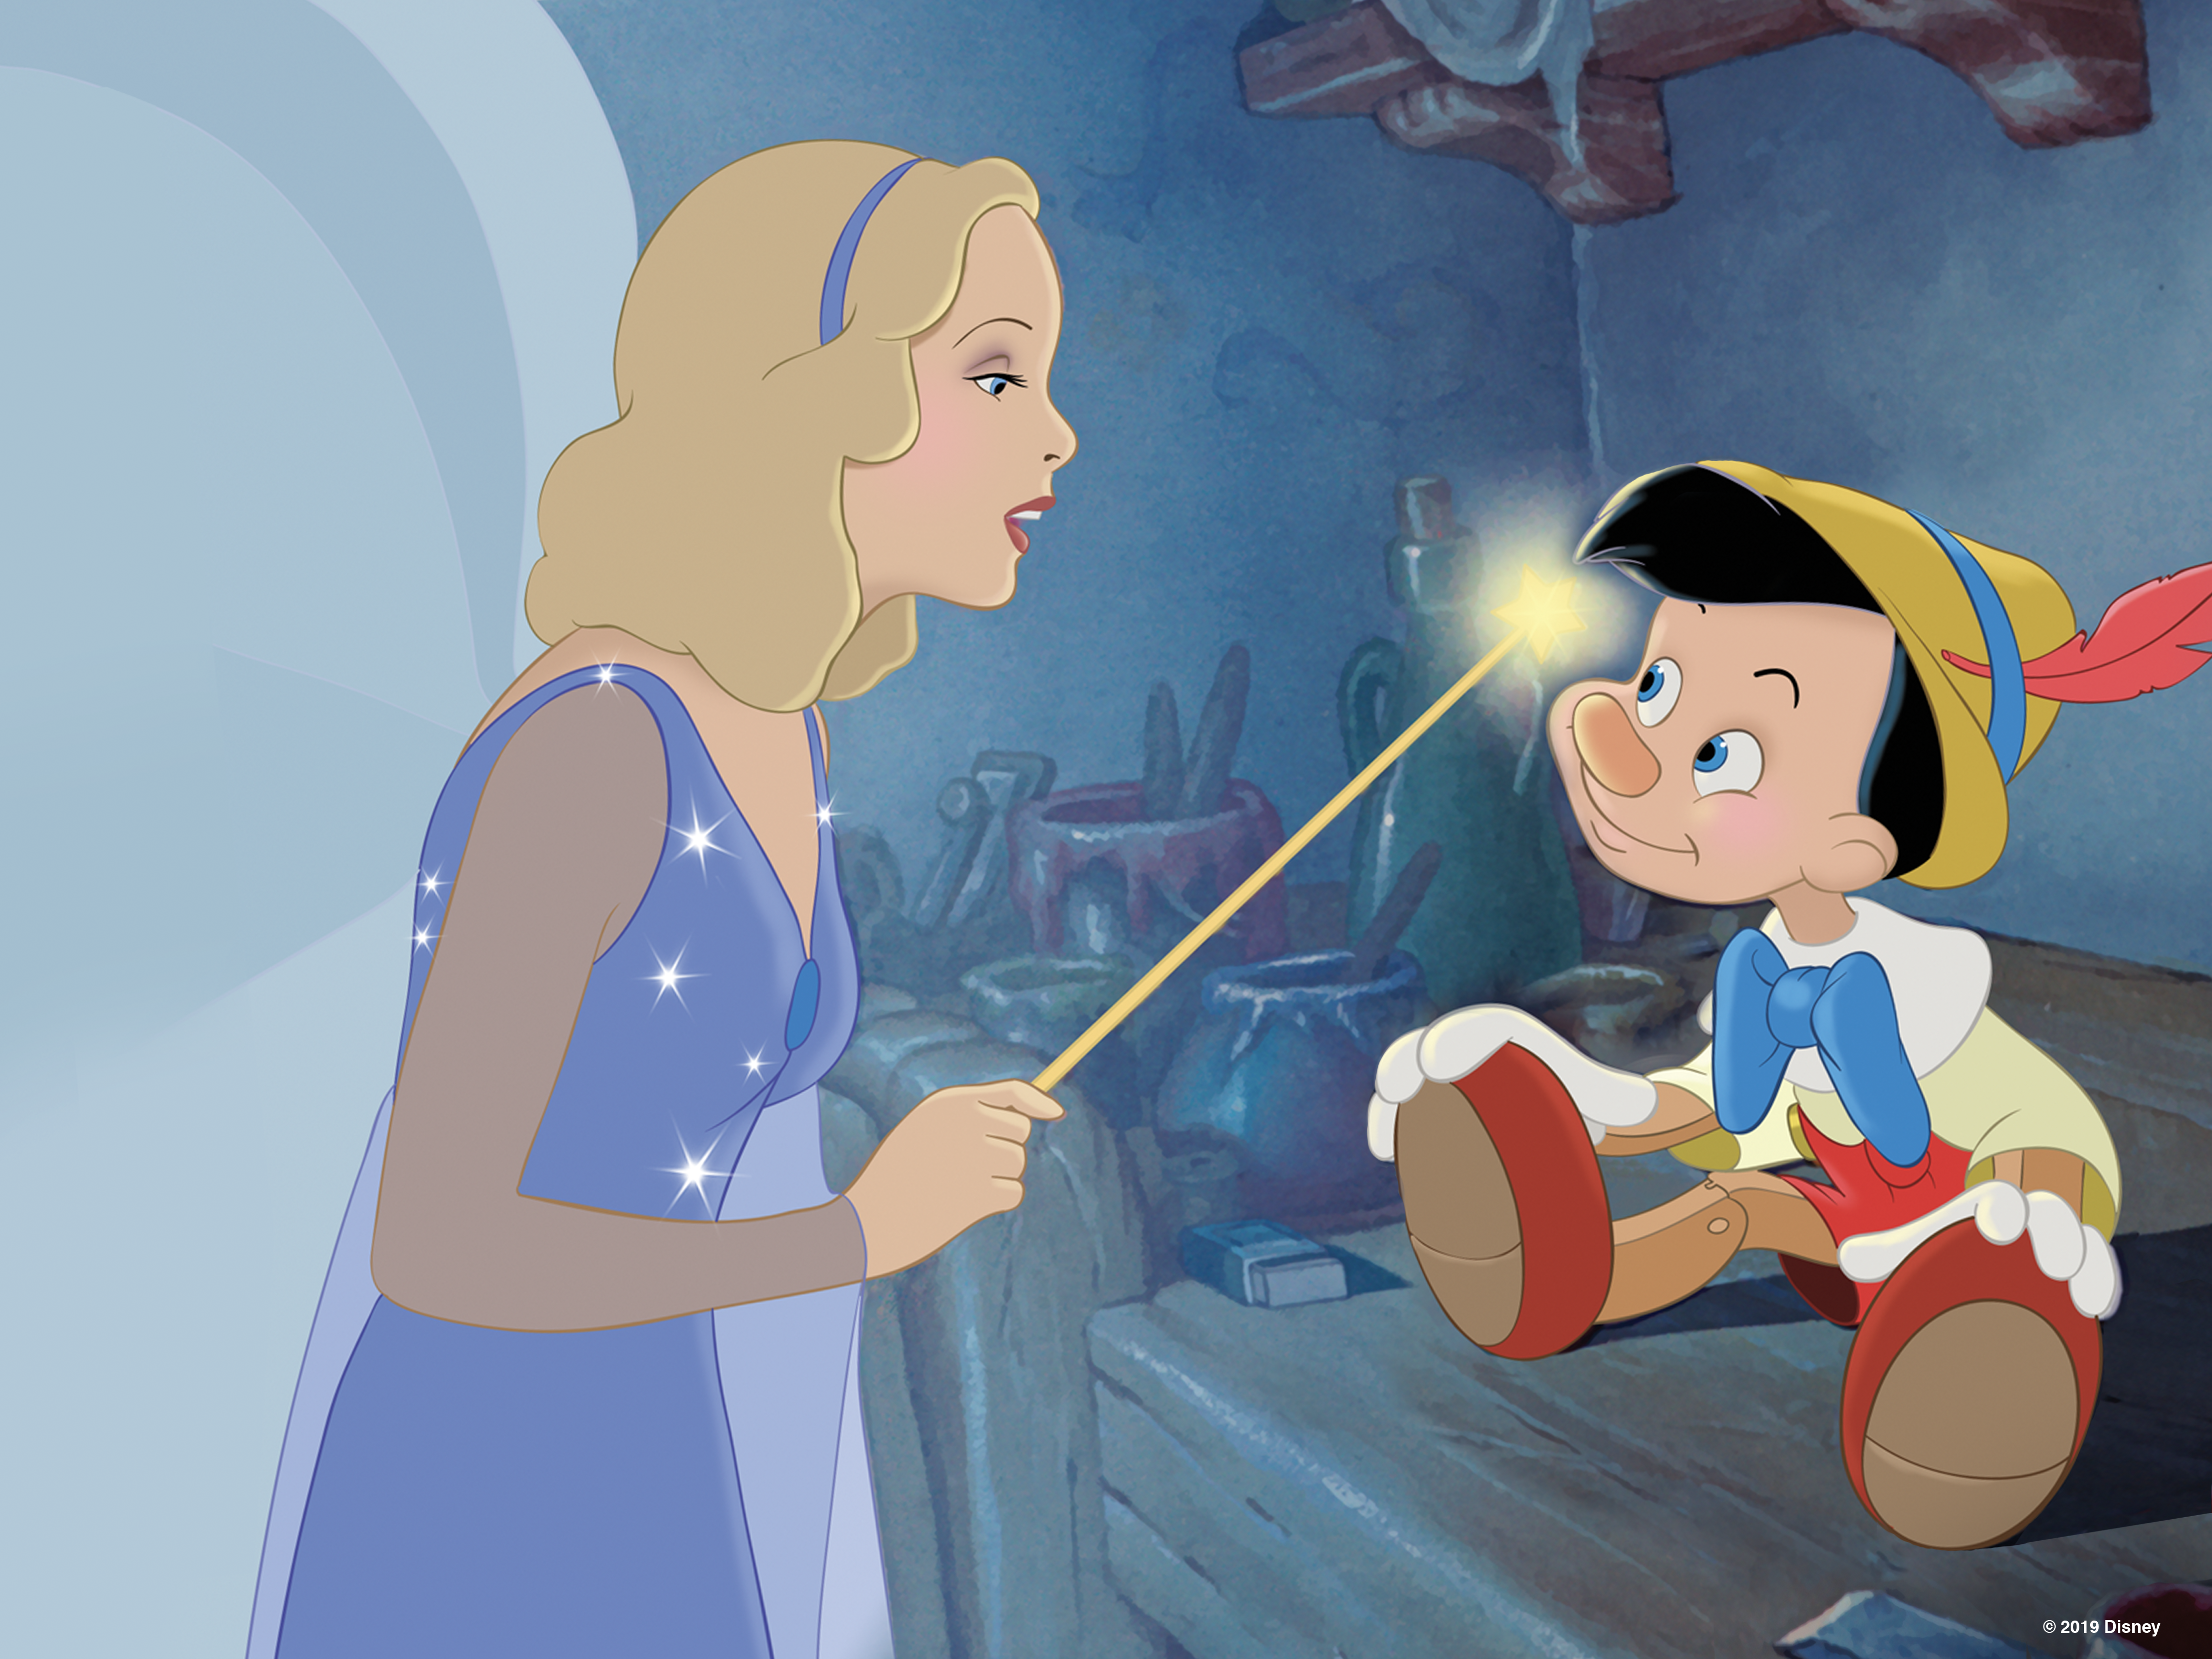 Pinocchio - Metacritic